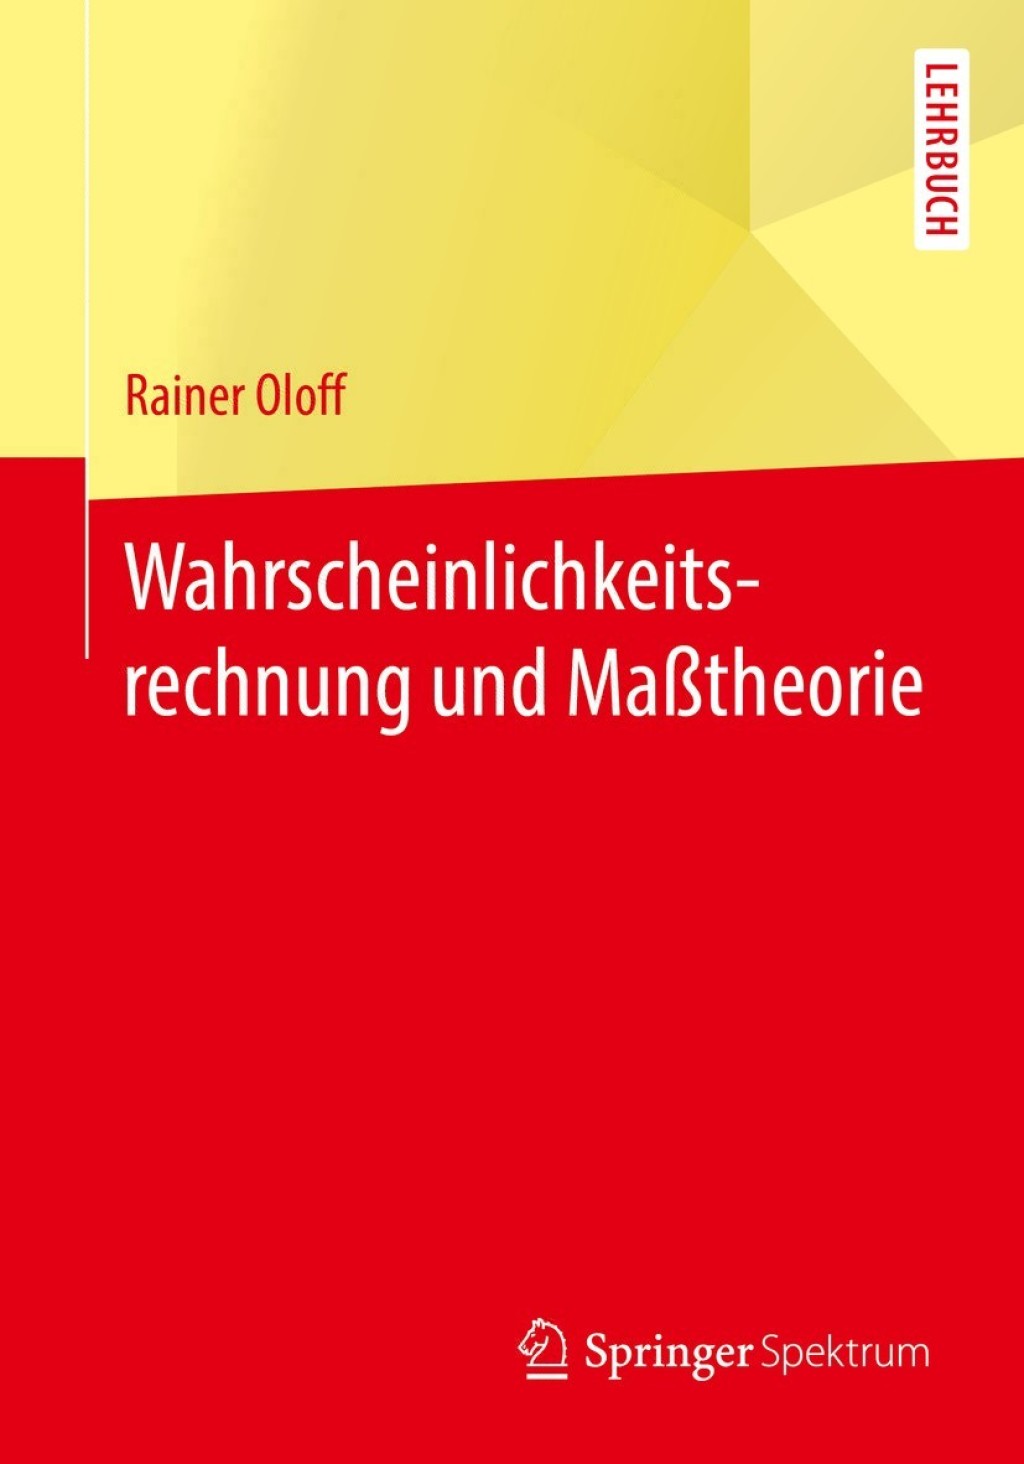 ISBN 9783662530238 product image for Wahrscheinlichkeitsrechnung und MaÃtheorie (eBook Rental) | upcitemdb.com